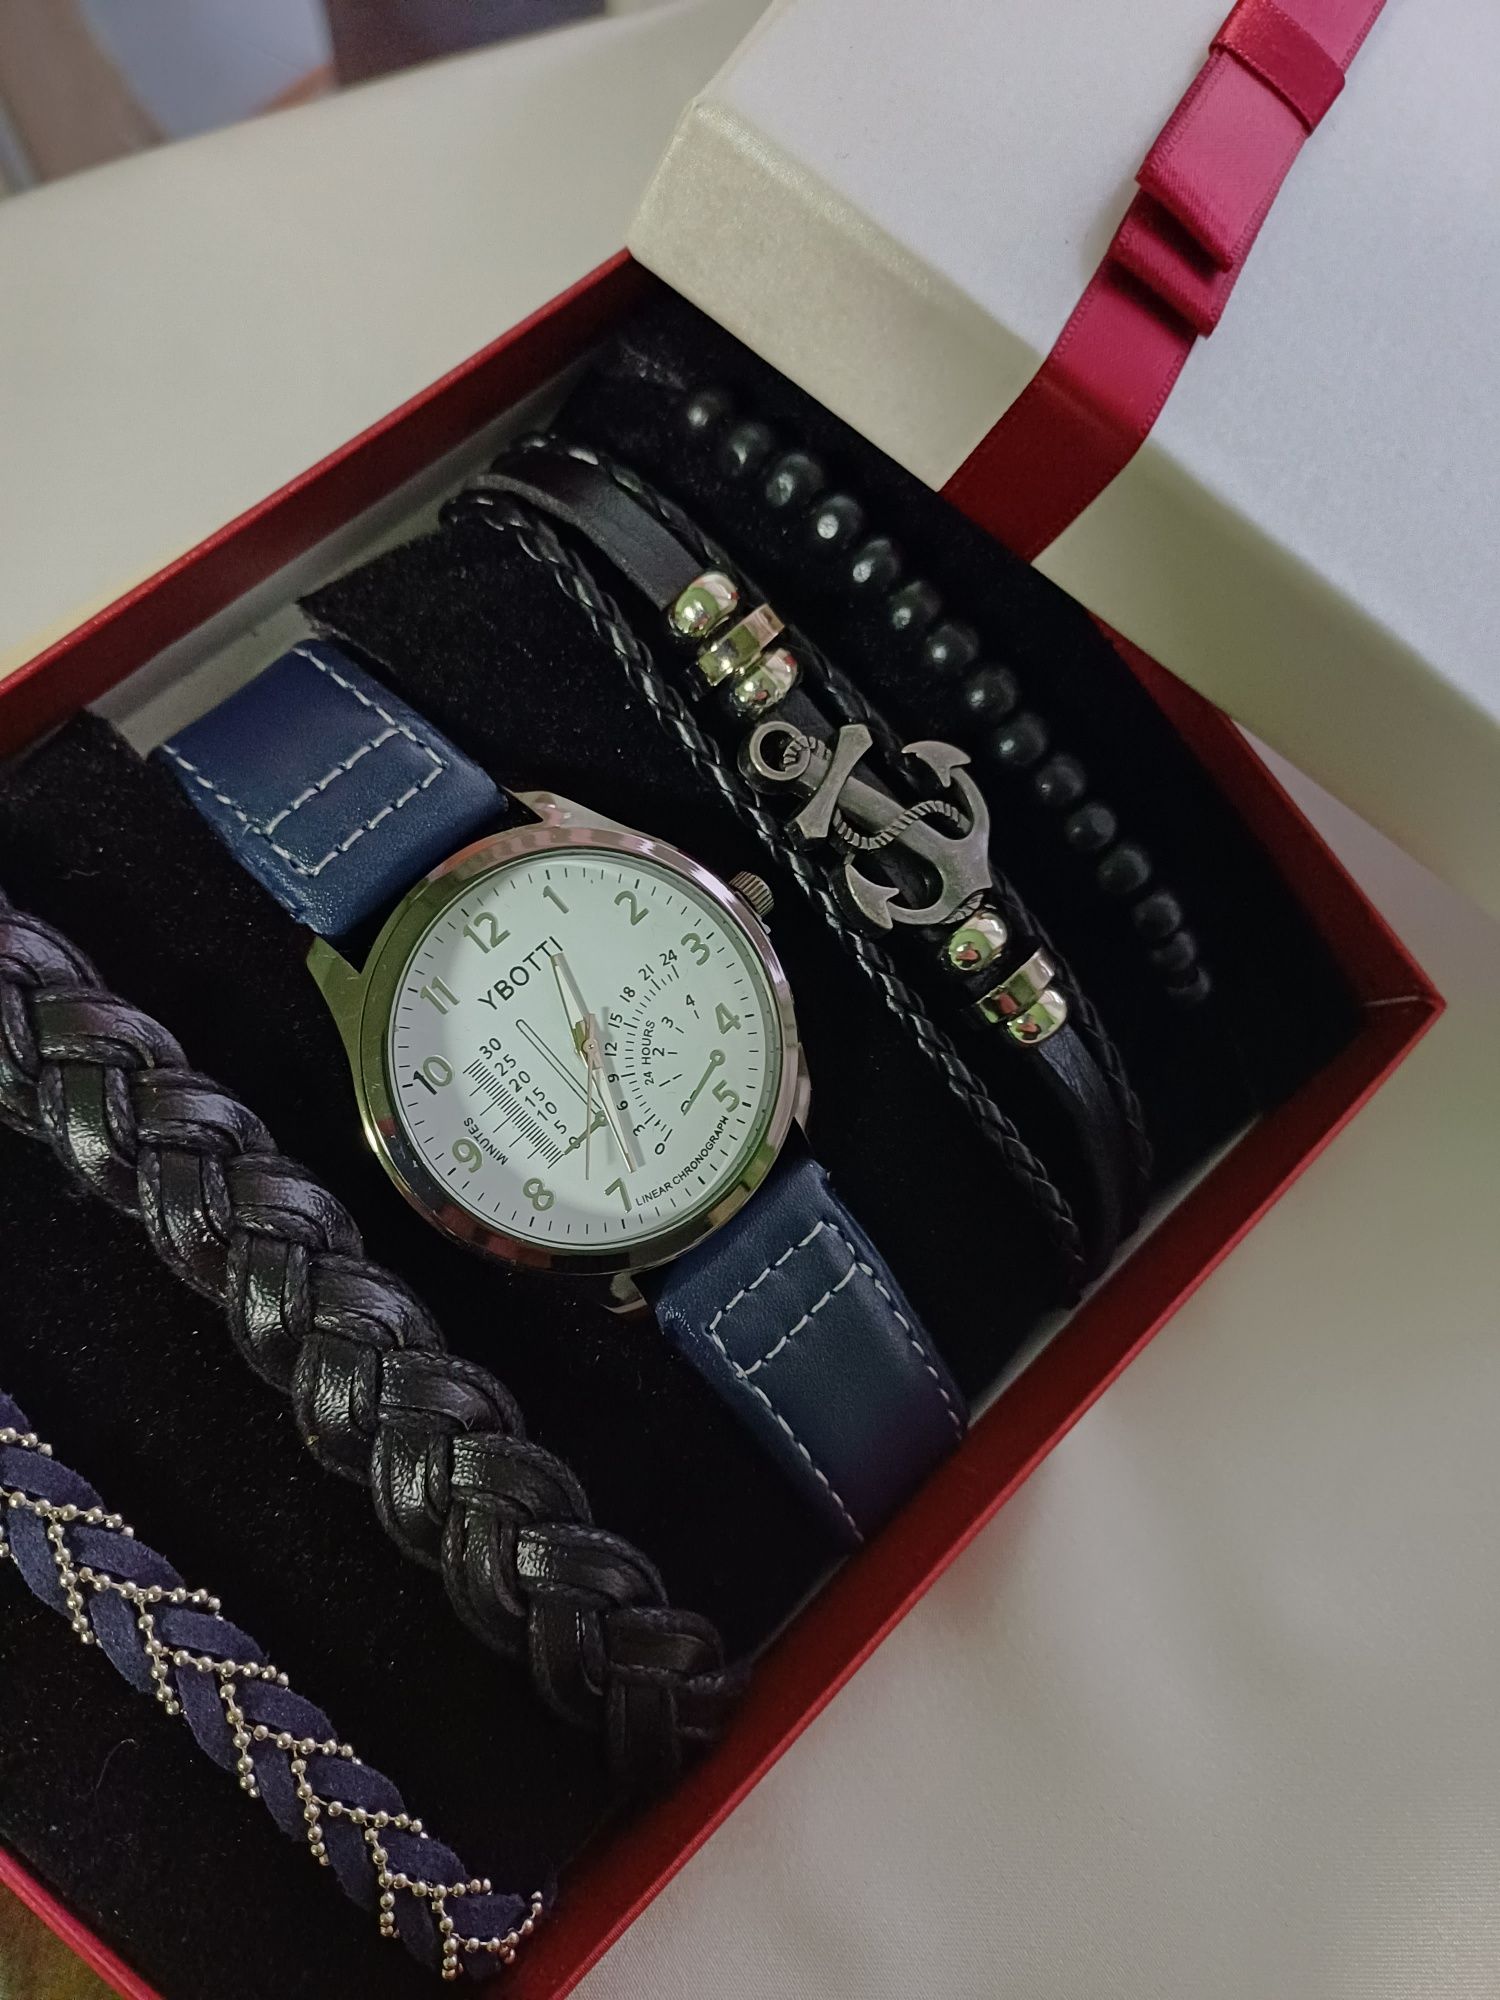 Niebieski komplet zegarek i 4 bransolety czarny- nowy